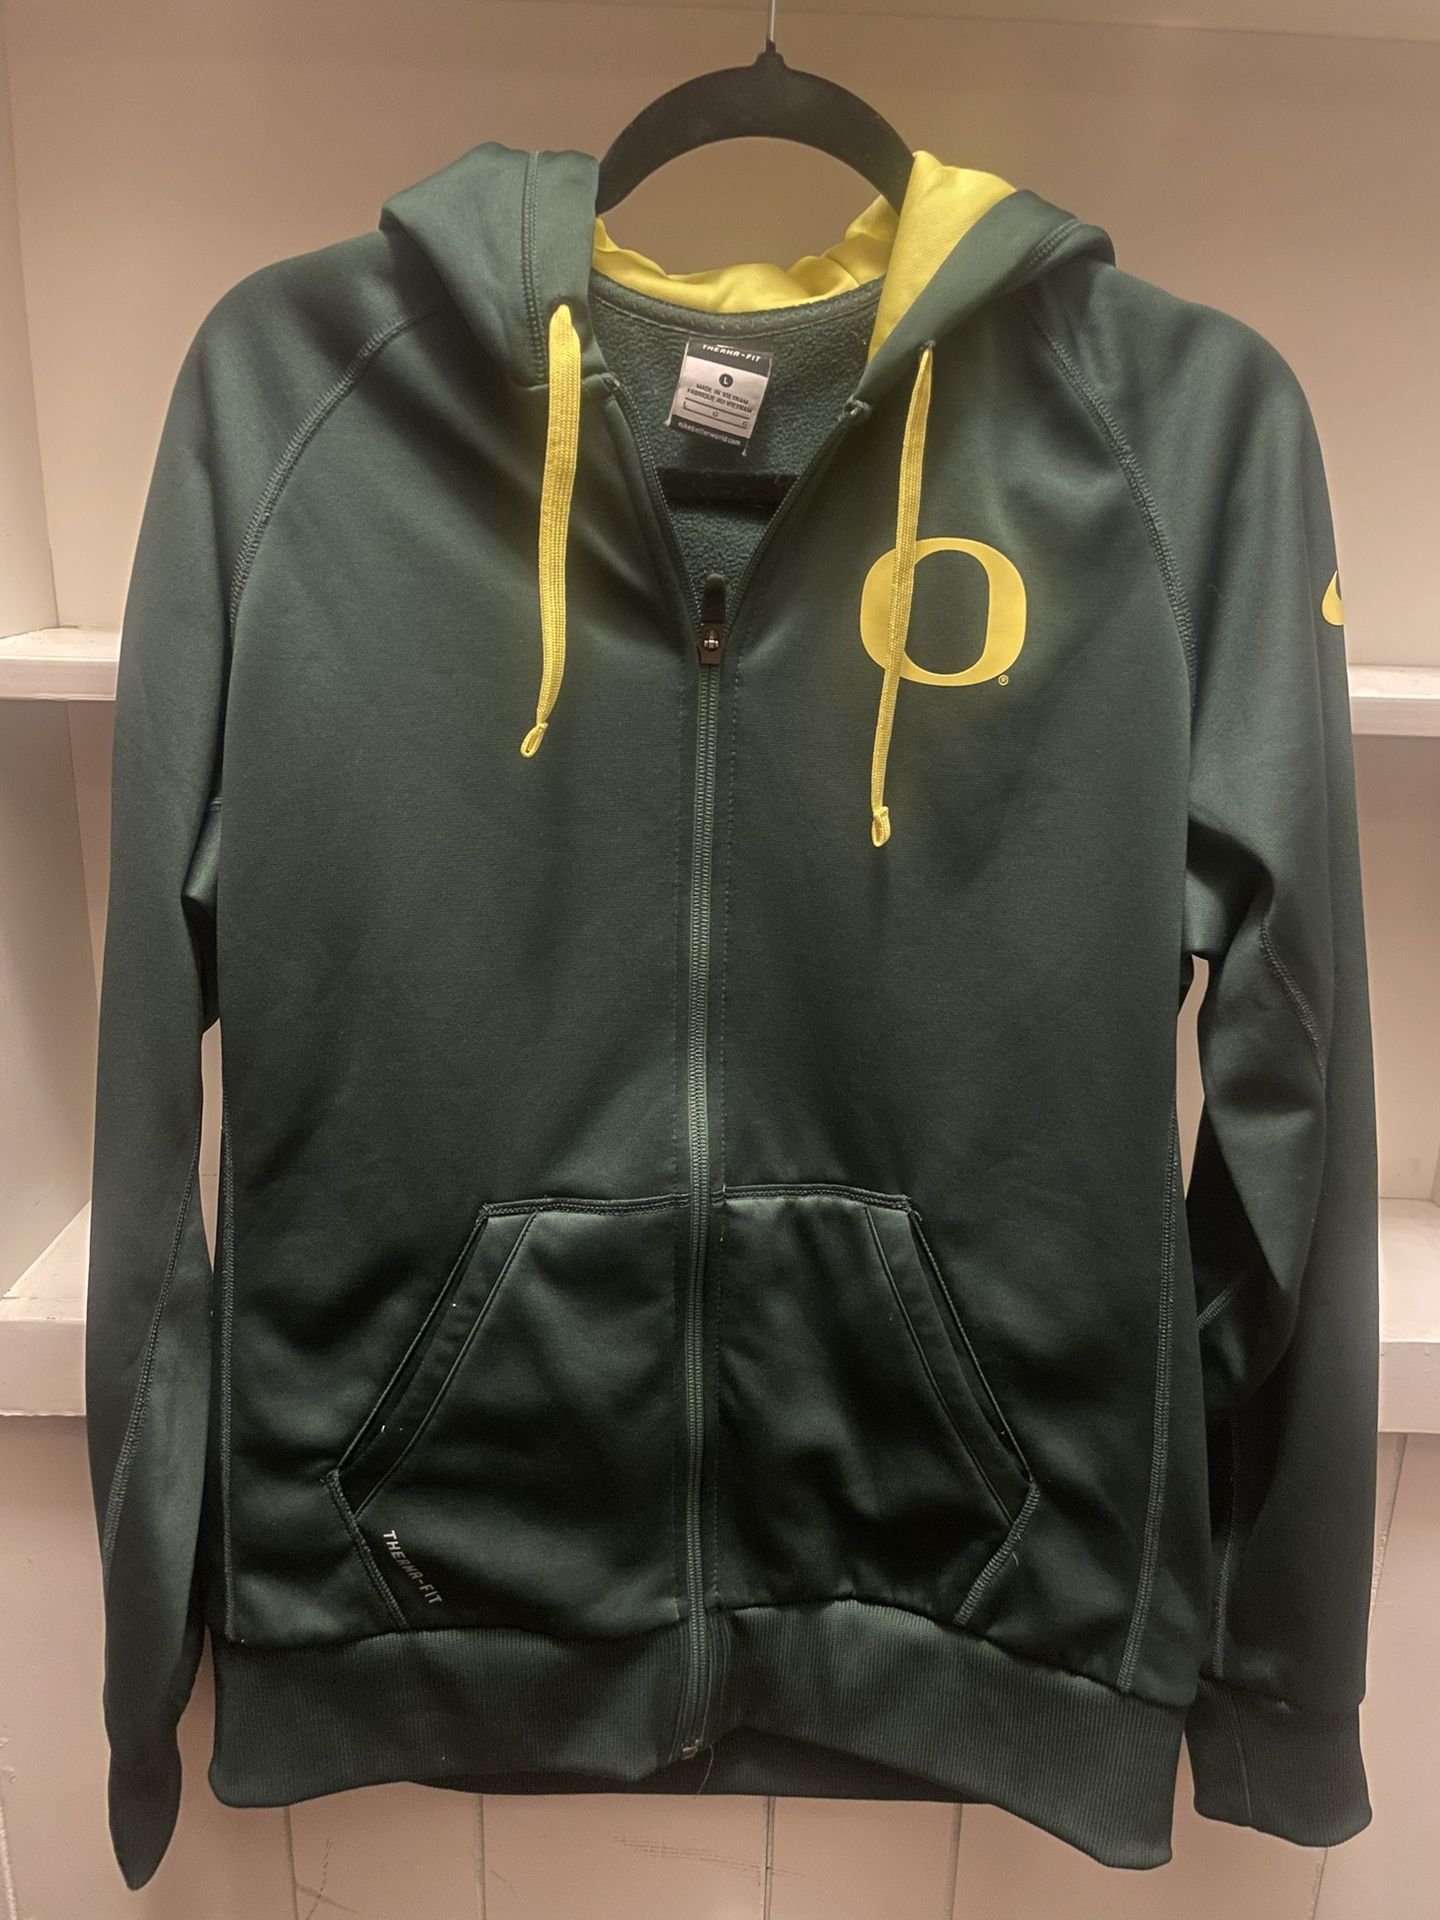 Oregon Ducks Nike Therma-fit zip up hoodie